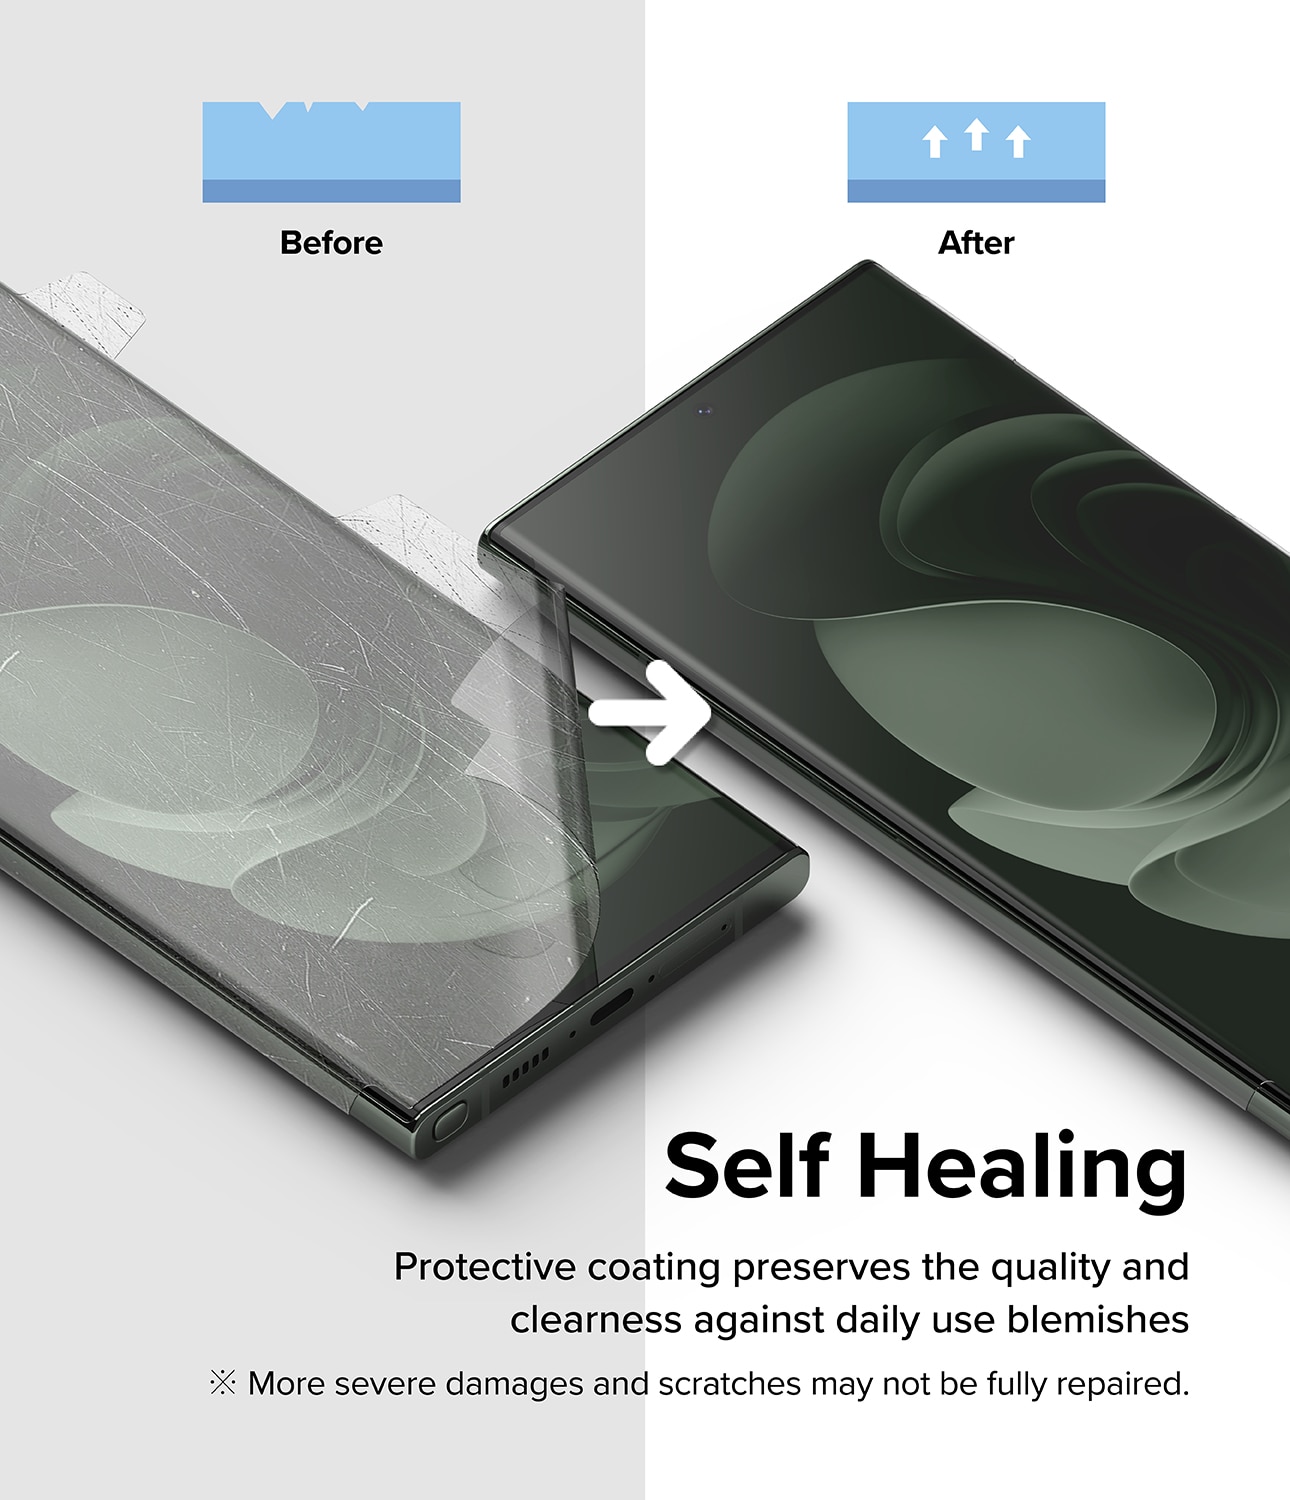 Dual Easy Wing Screen Protector (2 piezas) Samsung Galaxy S23 Ultra